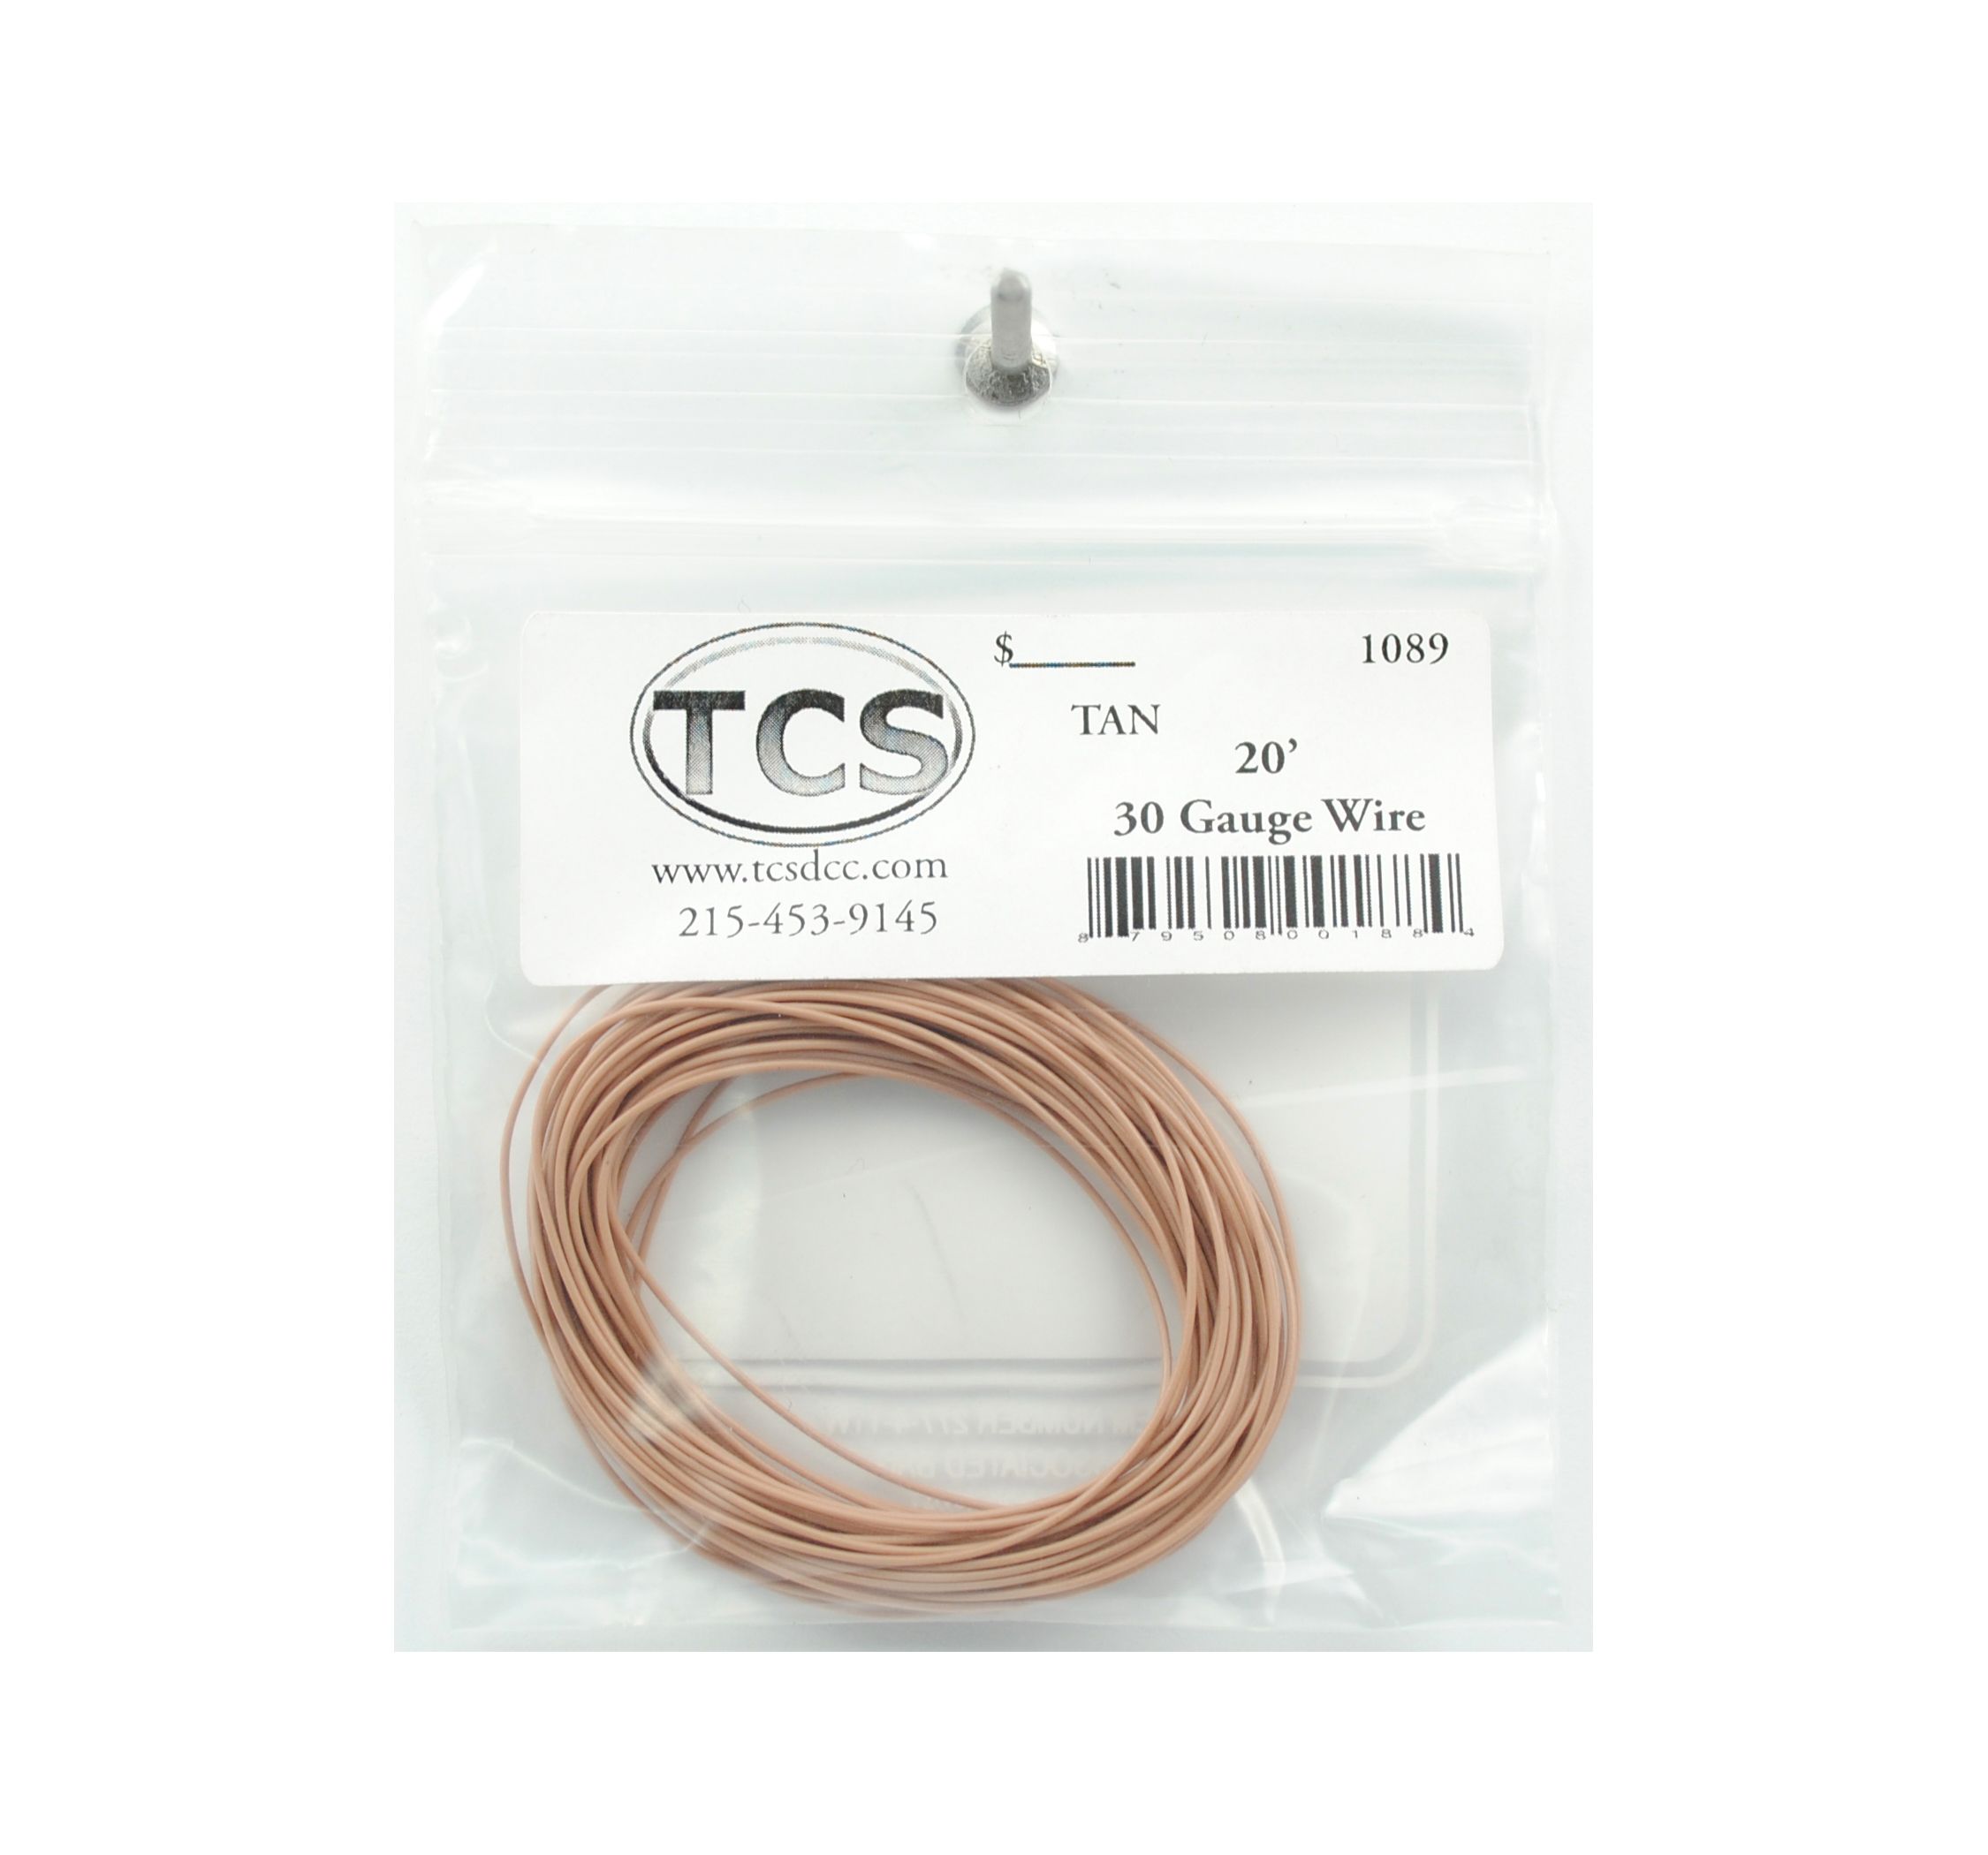 TCS #1366 DCC MC-1" Harness NEW 